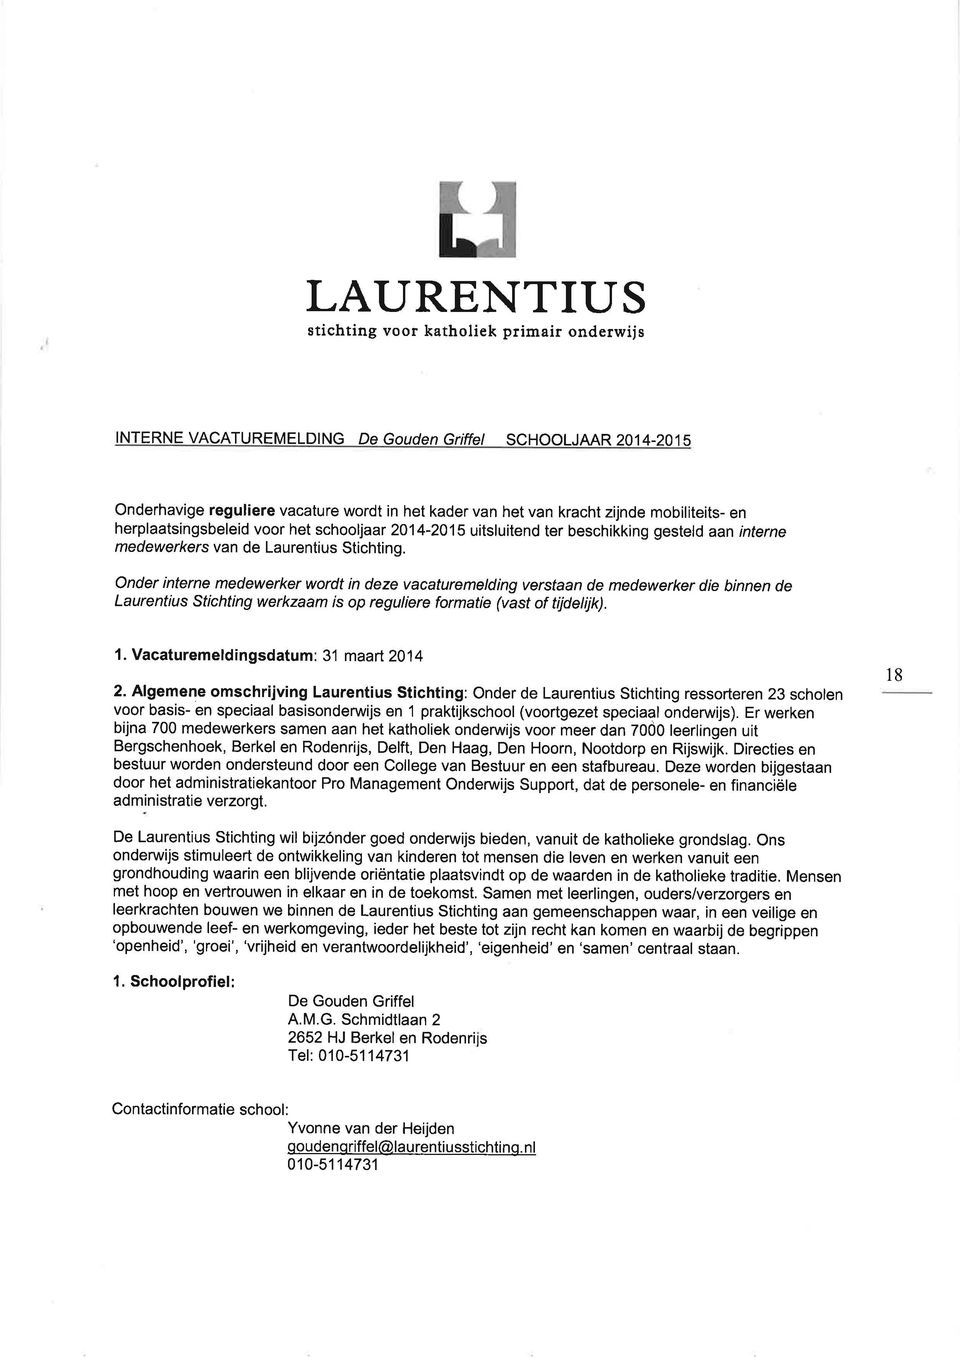 Onder interne medewerker wordt in deze vacaturemetding verstaan de medewerker die binnen de Laurentius Stichting werkzaam is op reguliere formatie (vast of tijdelijk).